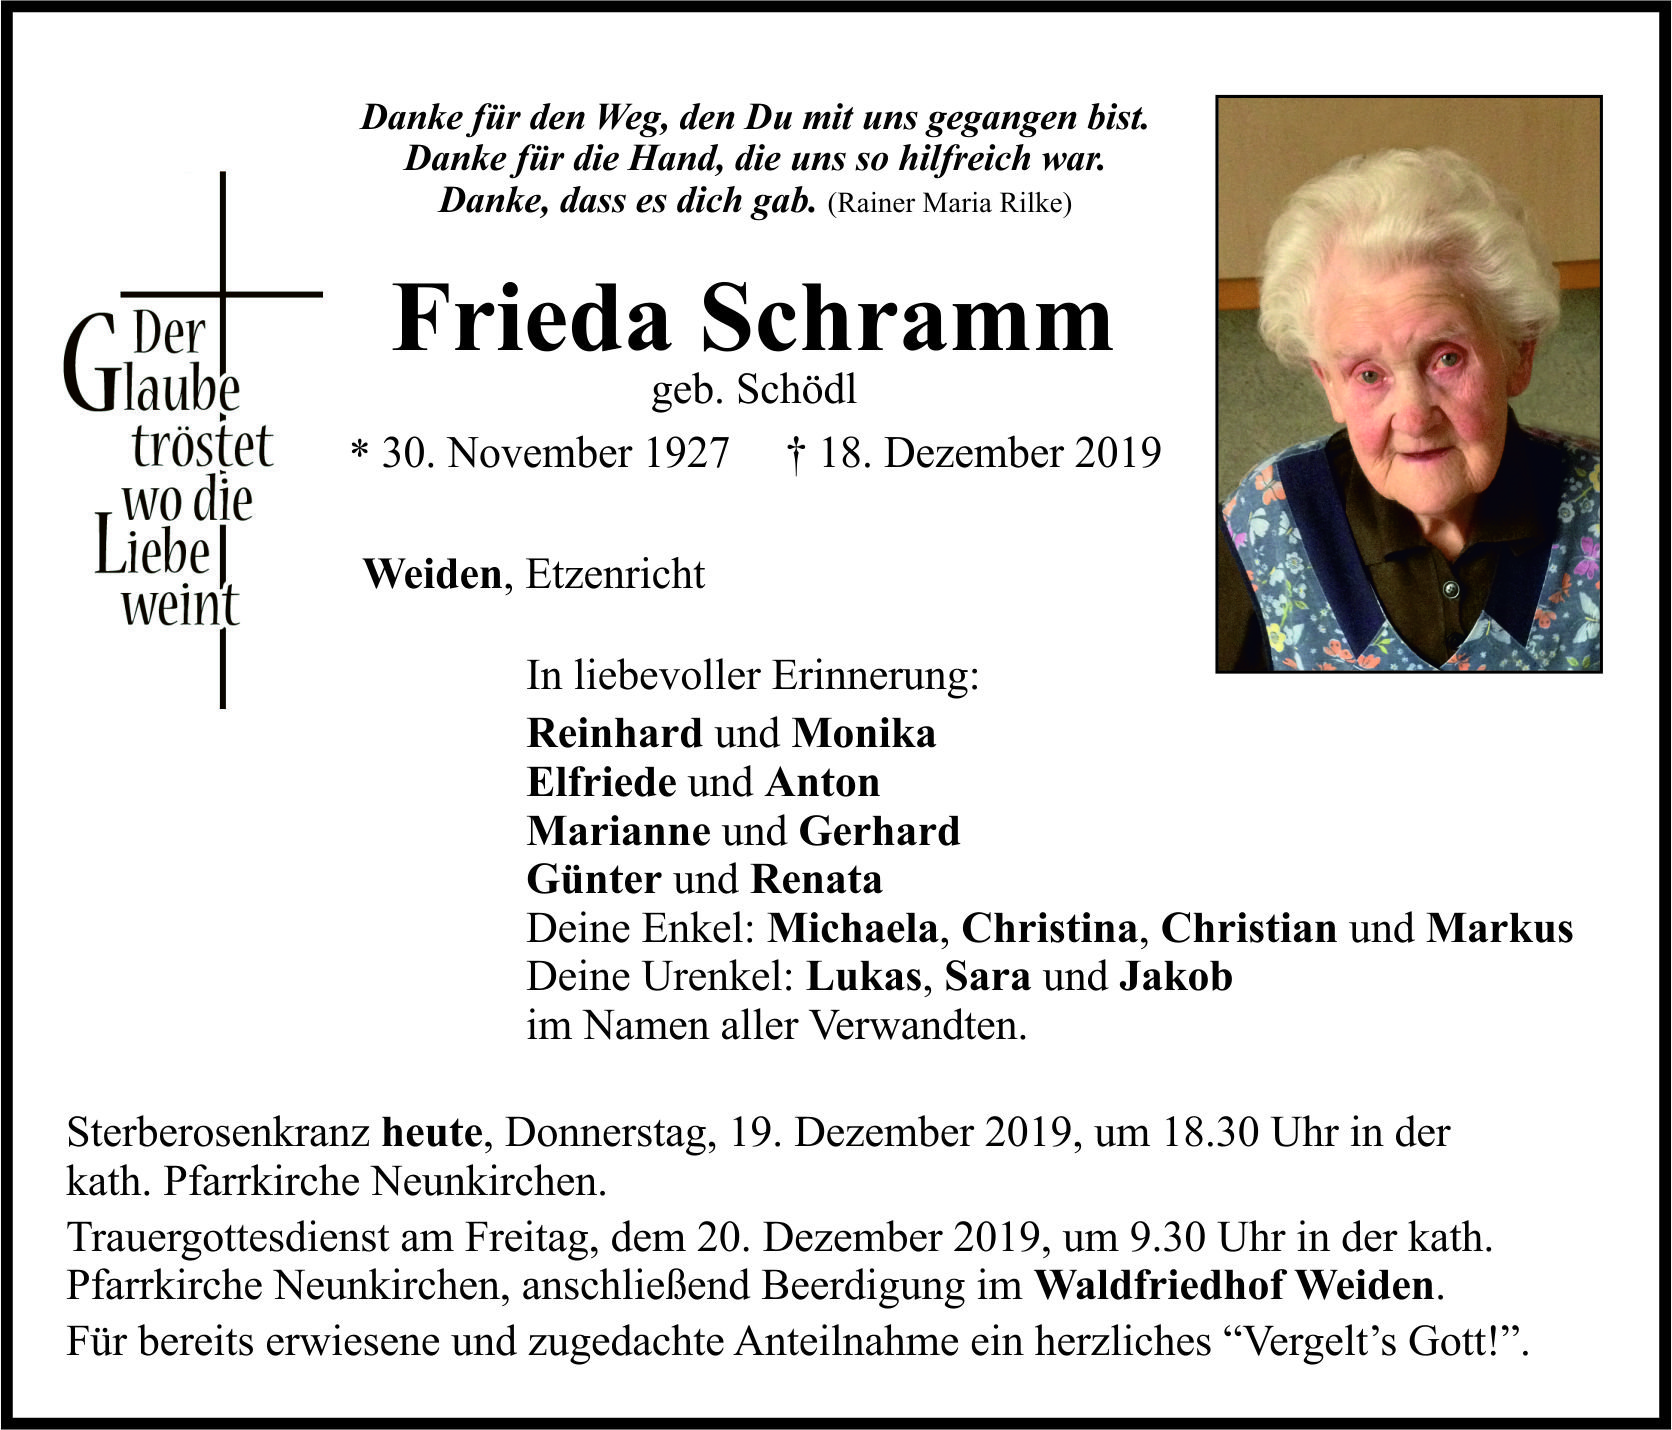 Traueranzeige Frieda Schramm, Weiden Etzenricht